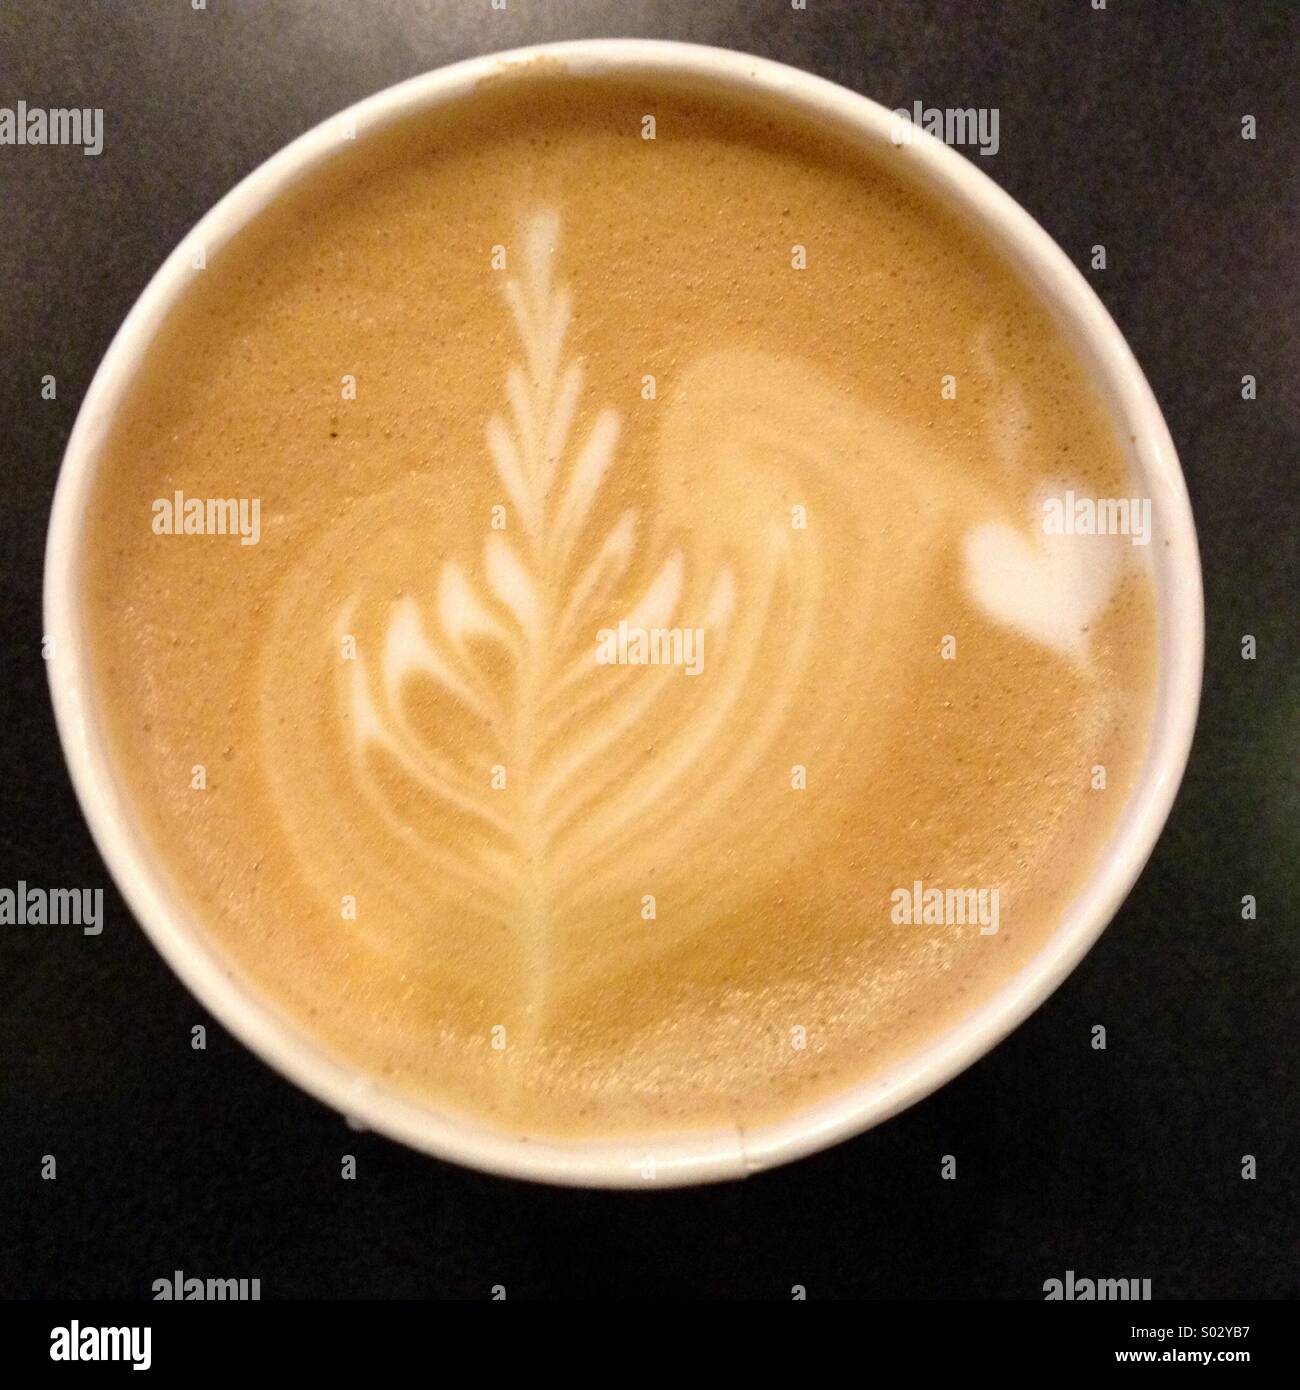 Latte vaporizzato e caffè espresso cappuccino in una tazza Foto Stock